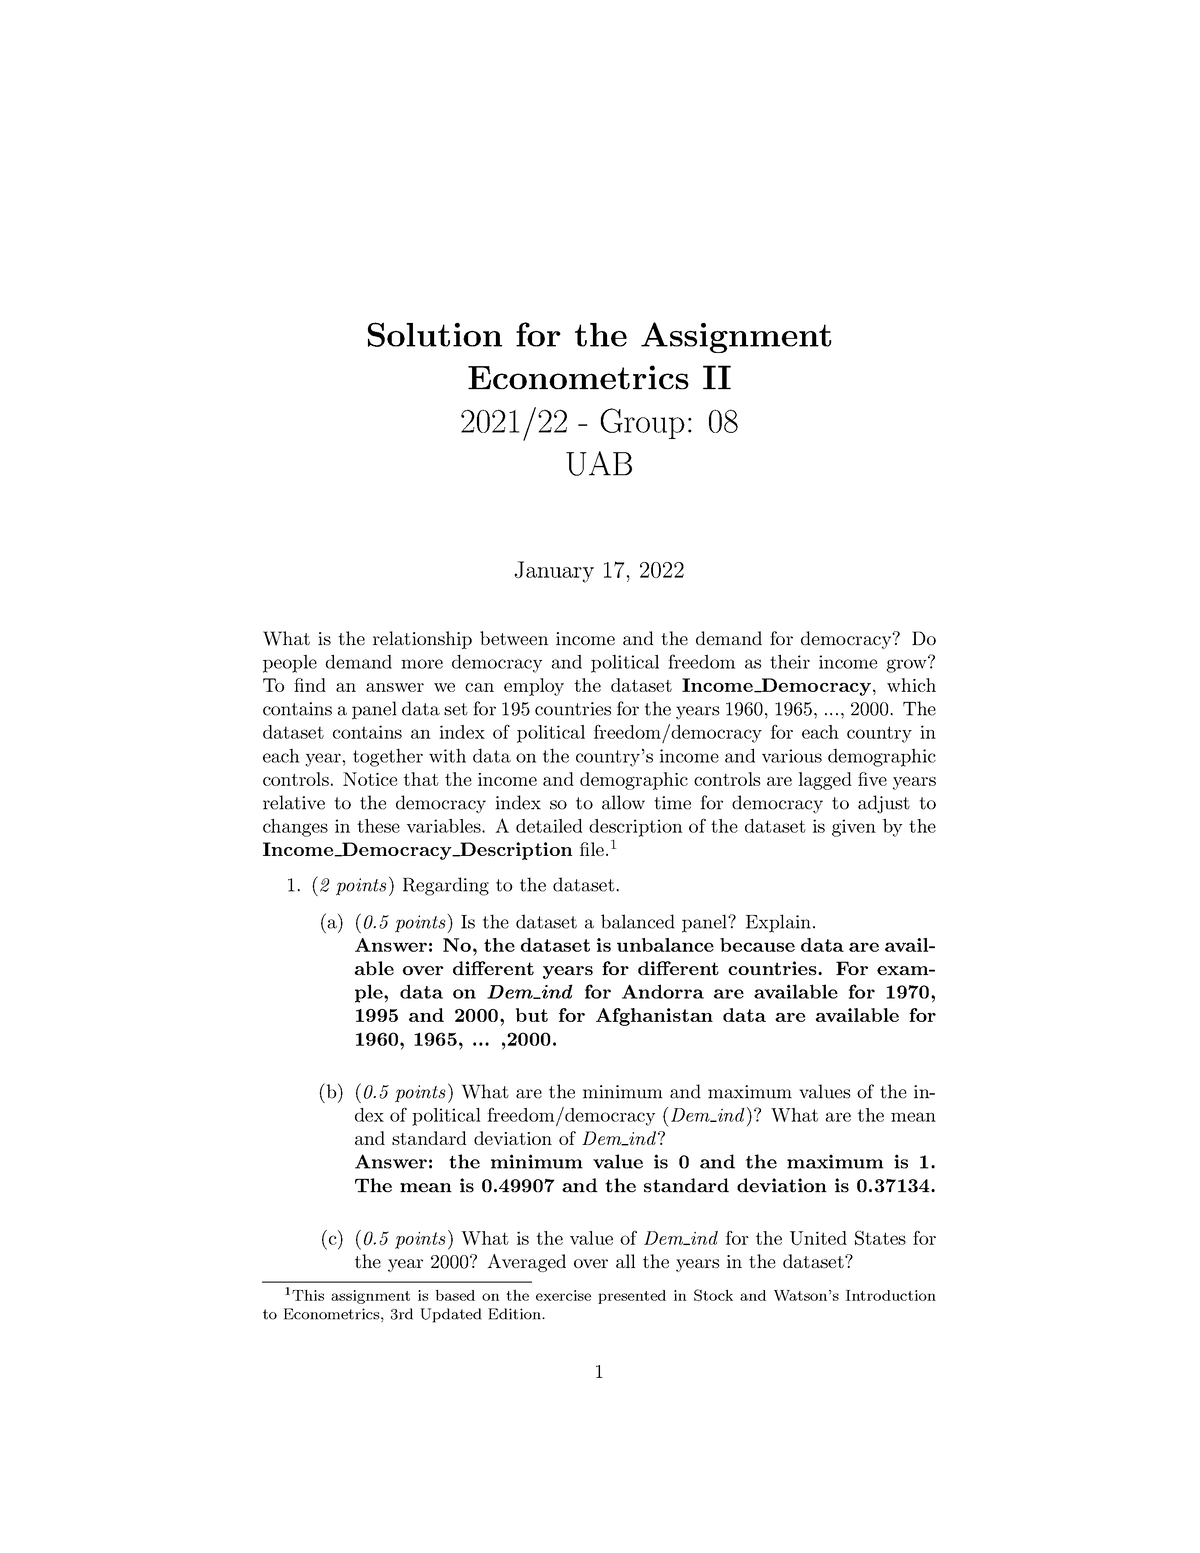 econometrics ii assignment 3